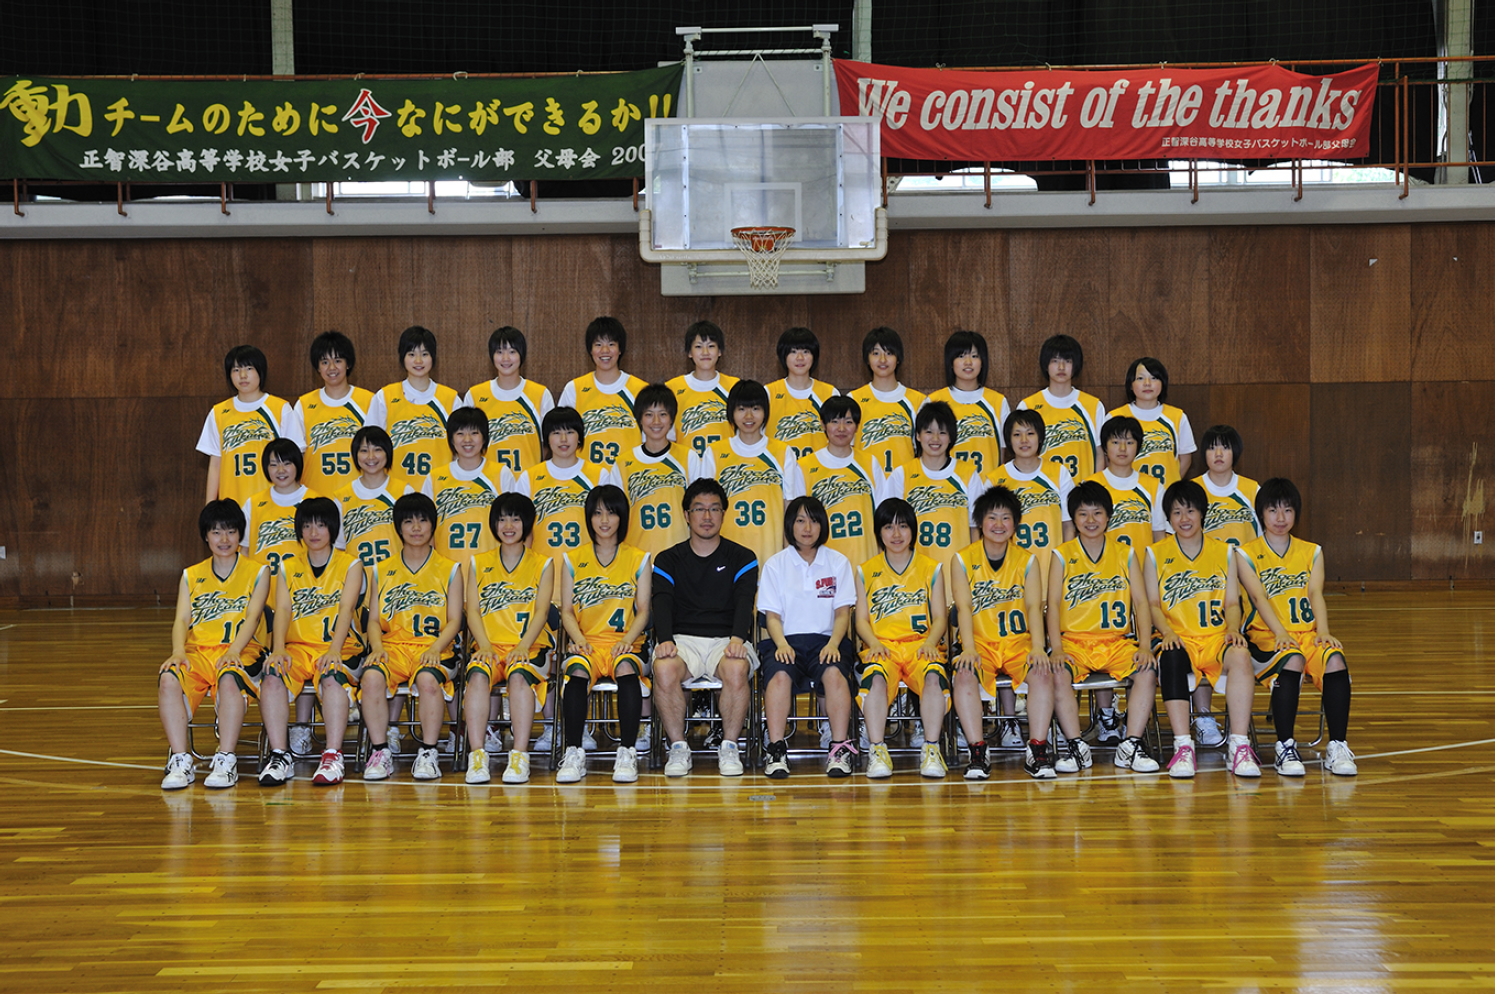 女子バスケットボール部 スタッフ メンバー 正智深谷高等学校